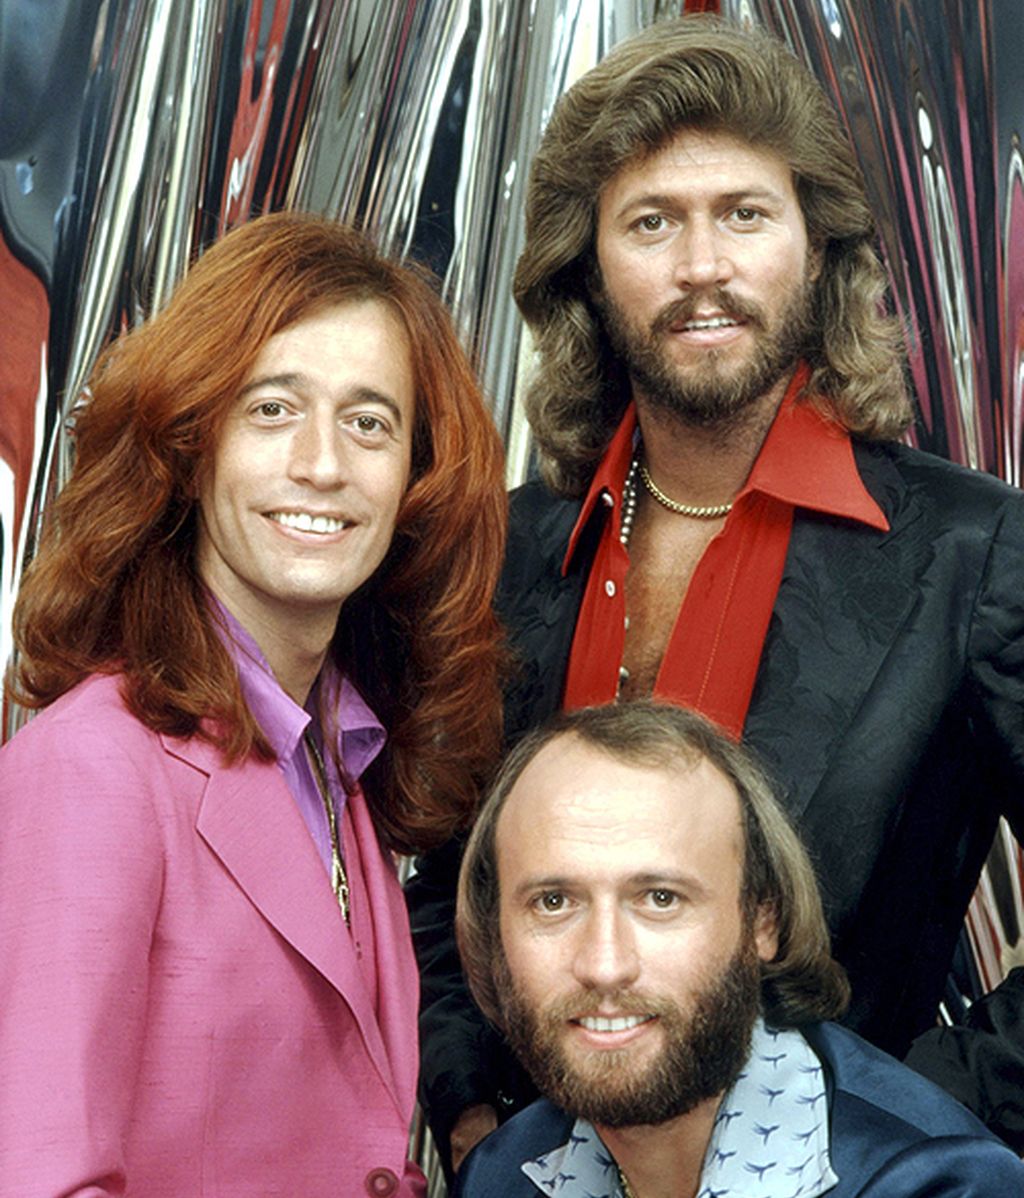 Homenaje al estilo de Robin y los Bee Gees: una vida de éxito y looks extremos